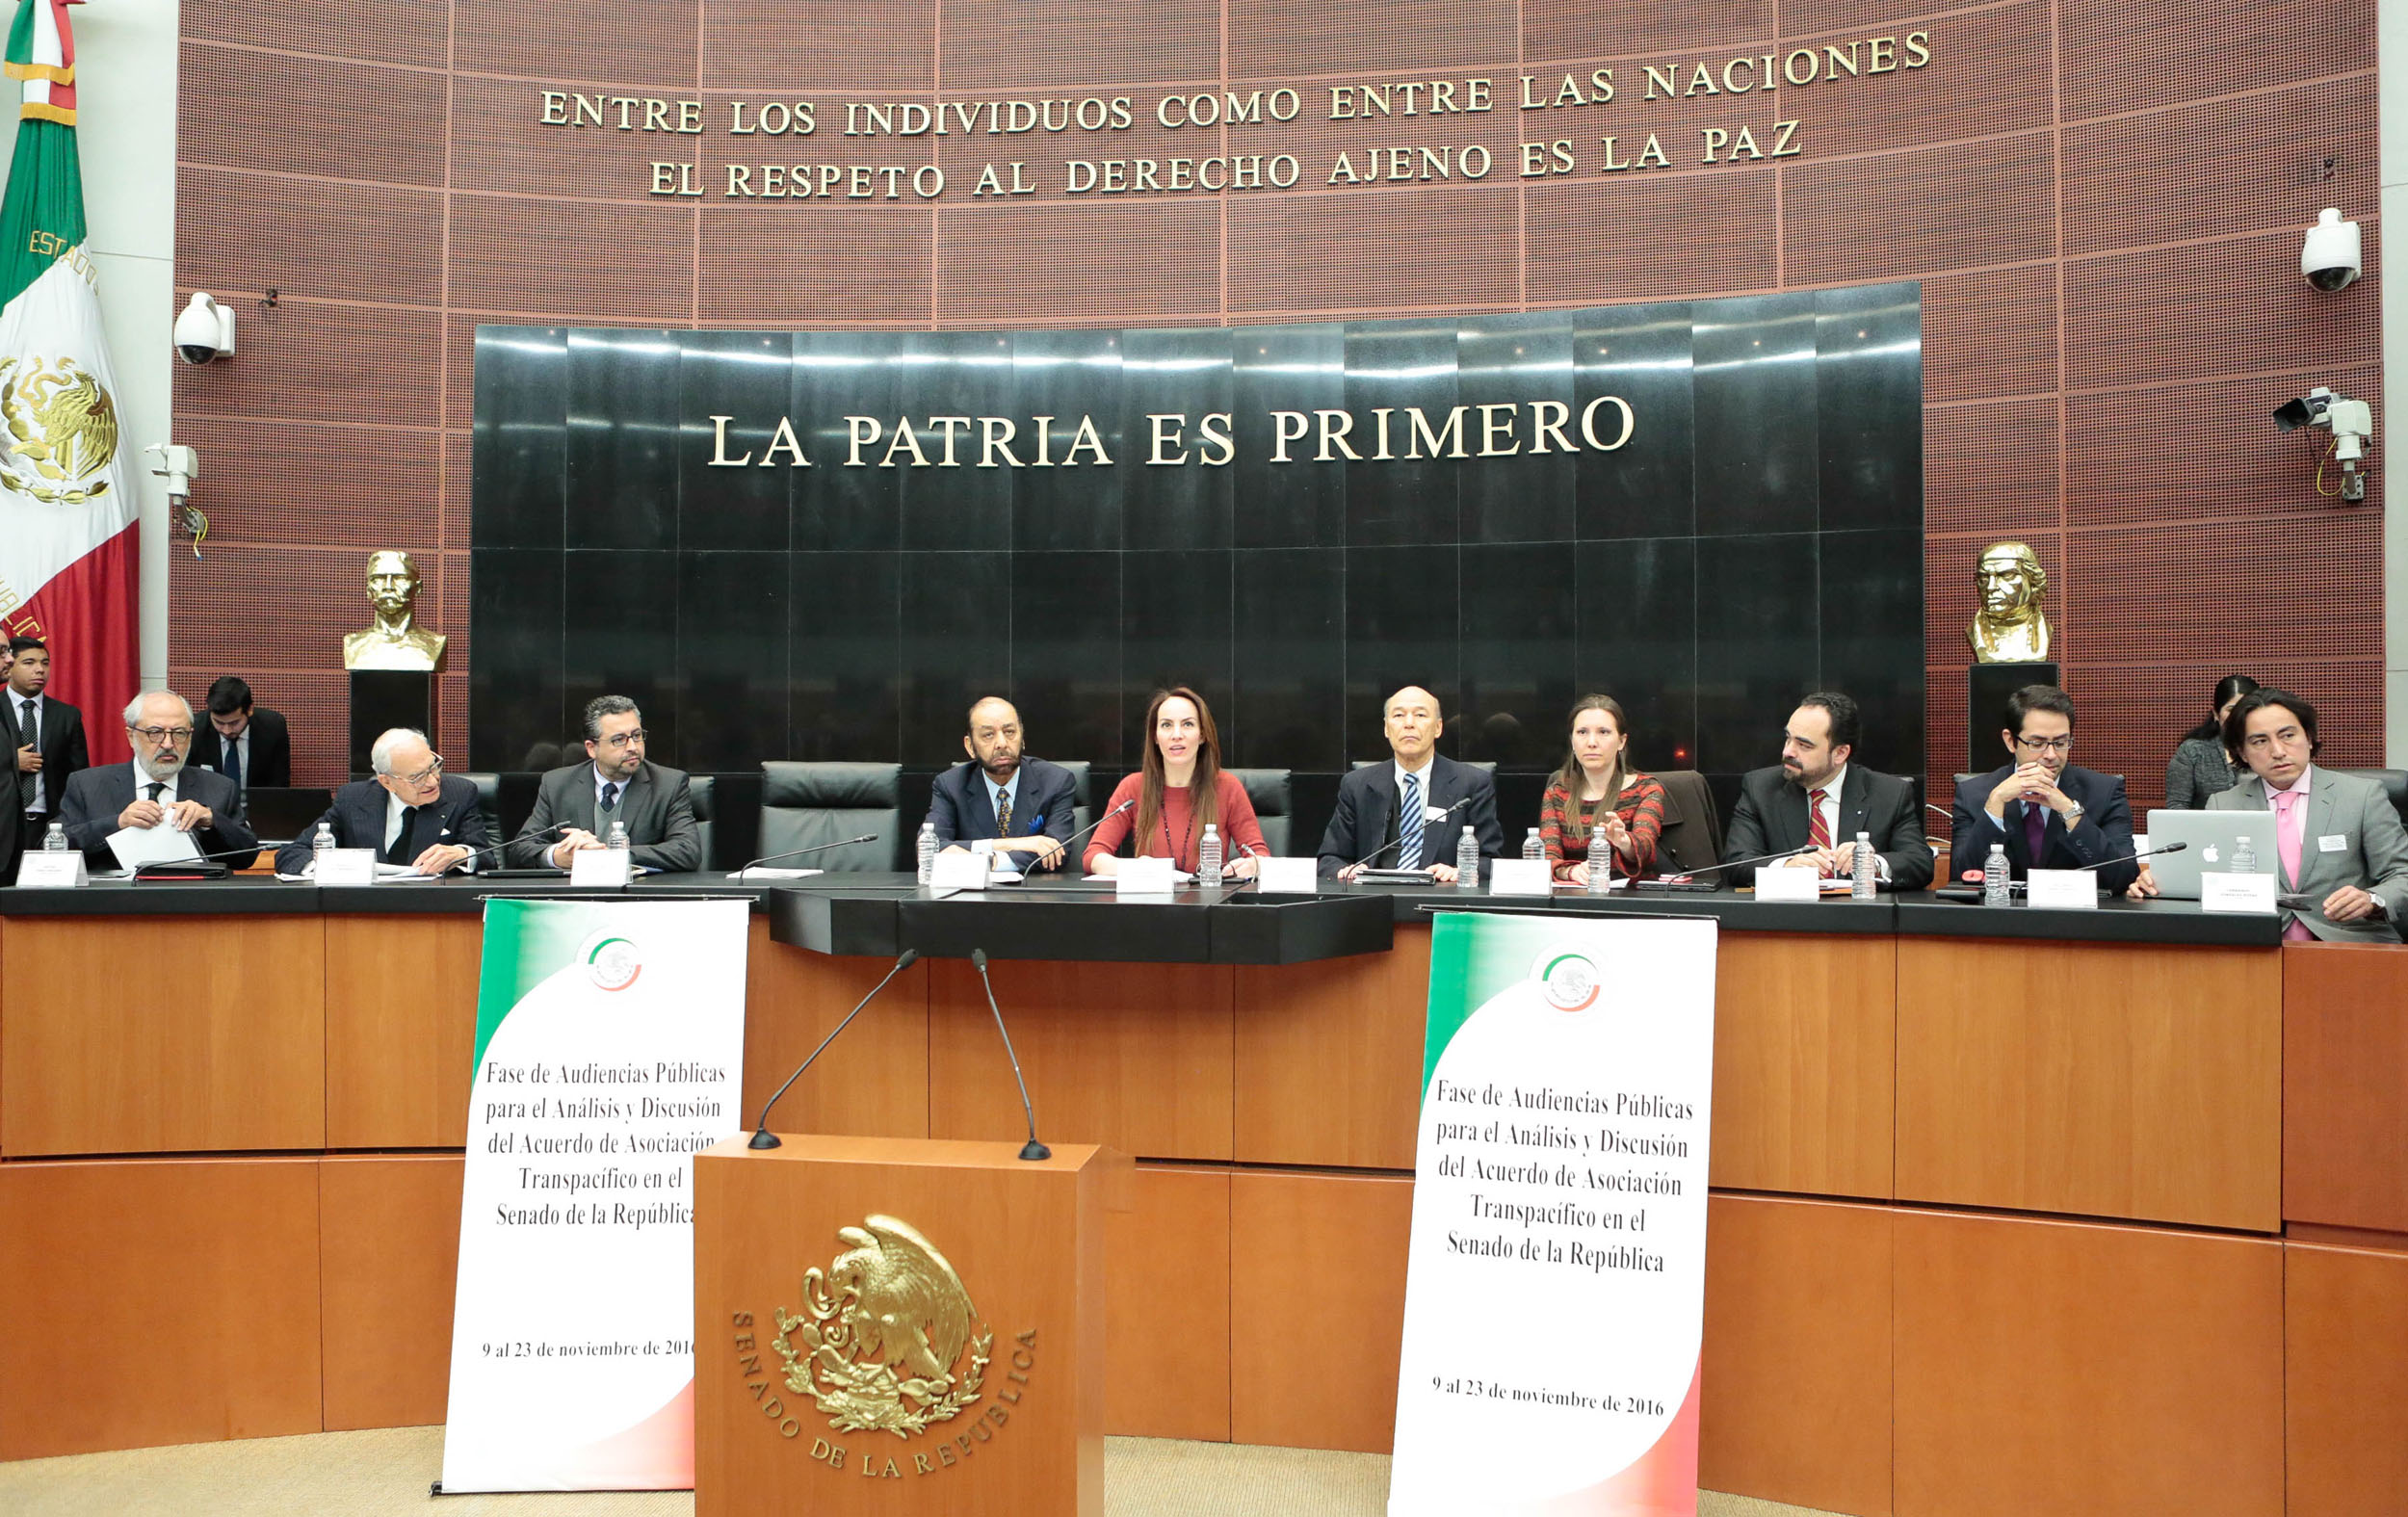 Los senadores del PRI escuchamos con el mayor interés las diversas opiniones sobre los alcances del TPP: senador Emilio Gamboa Patrón